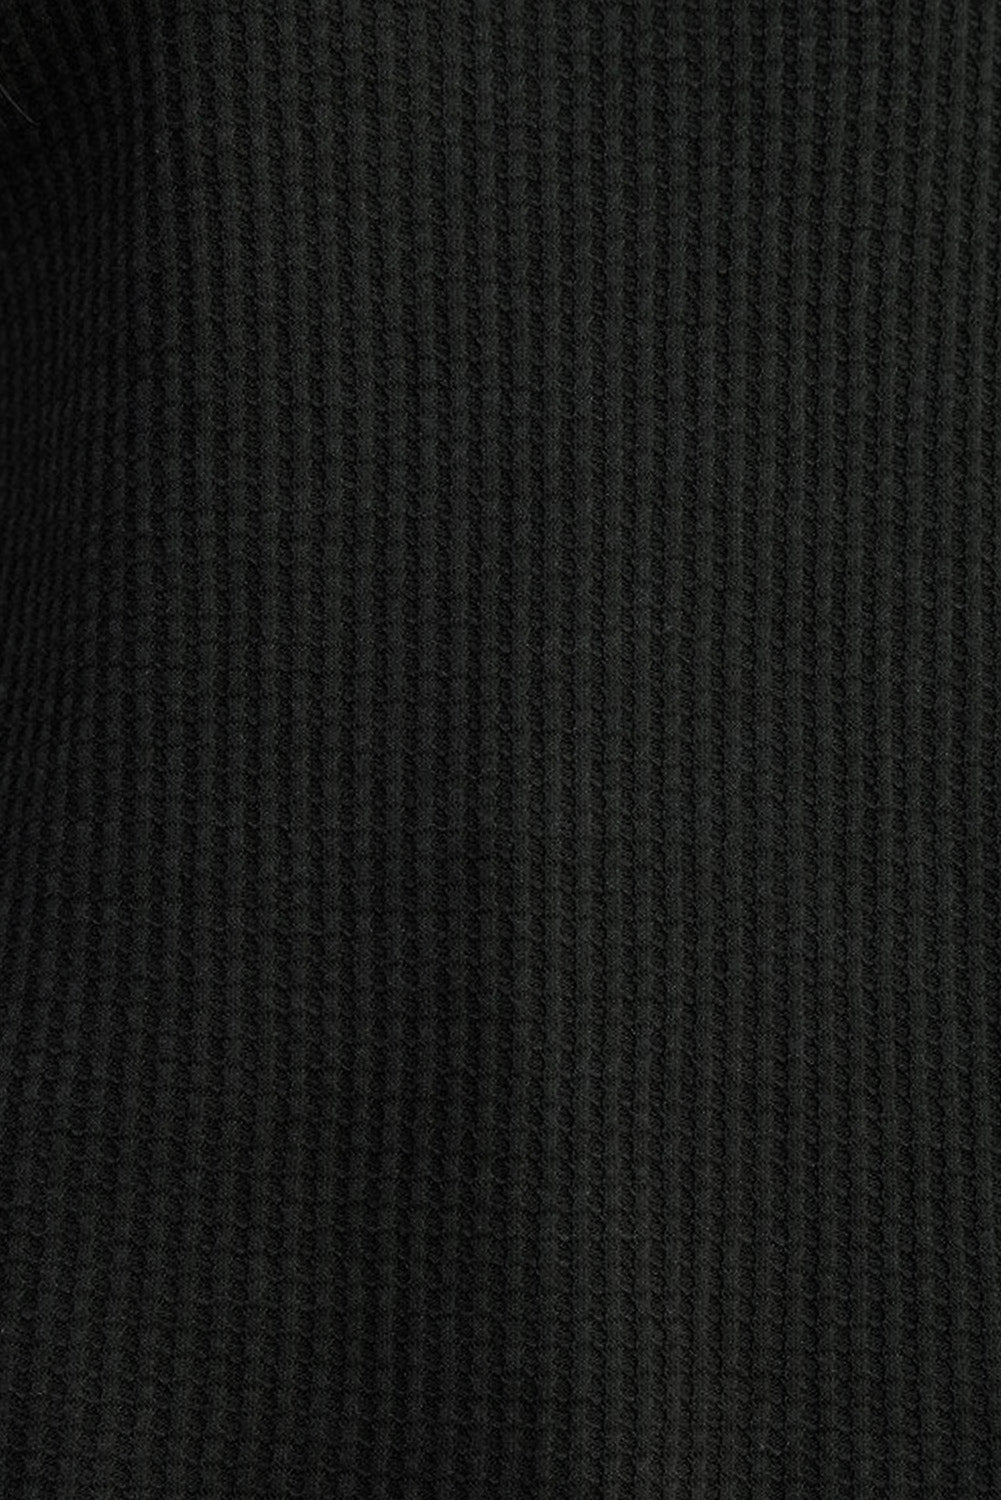 Črna pletena majica z okroglim izrezom in obrobo iz vaflja